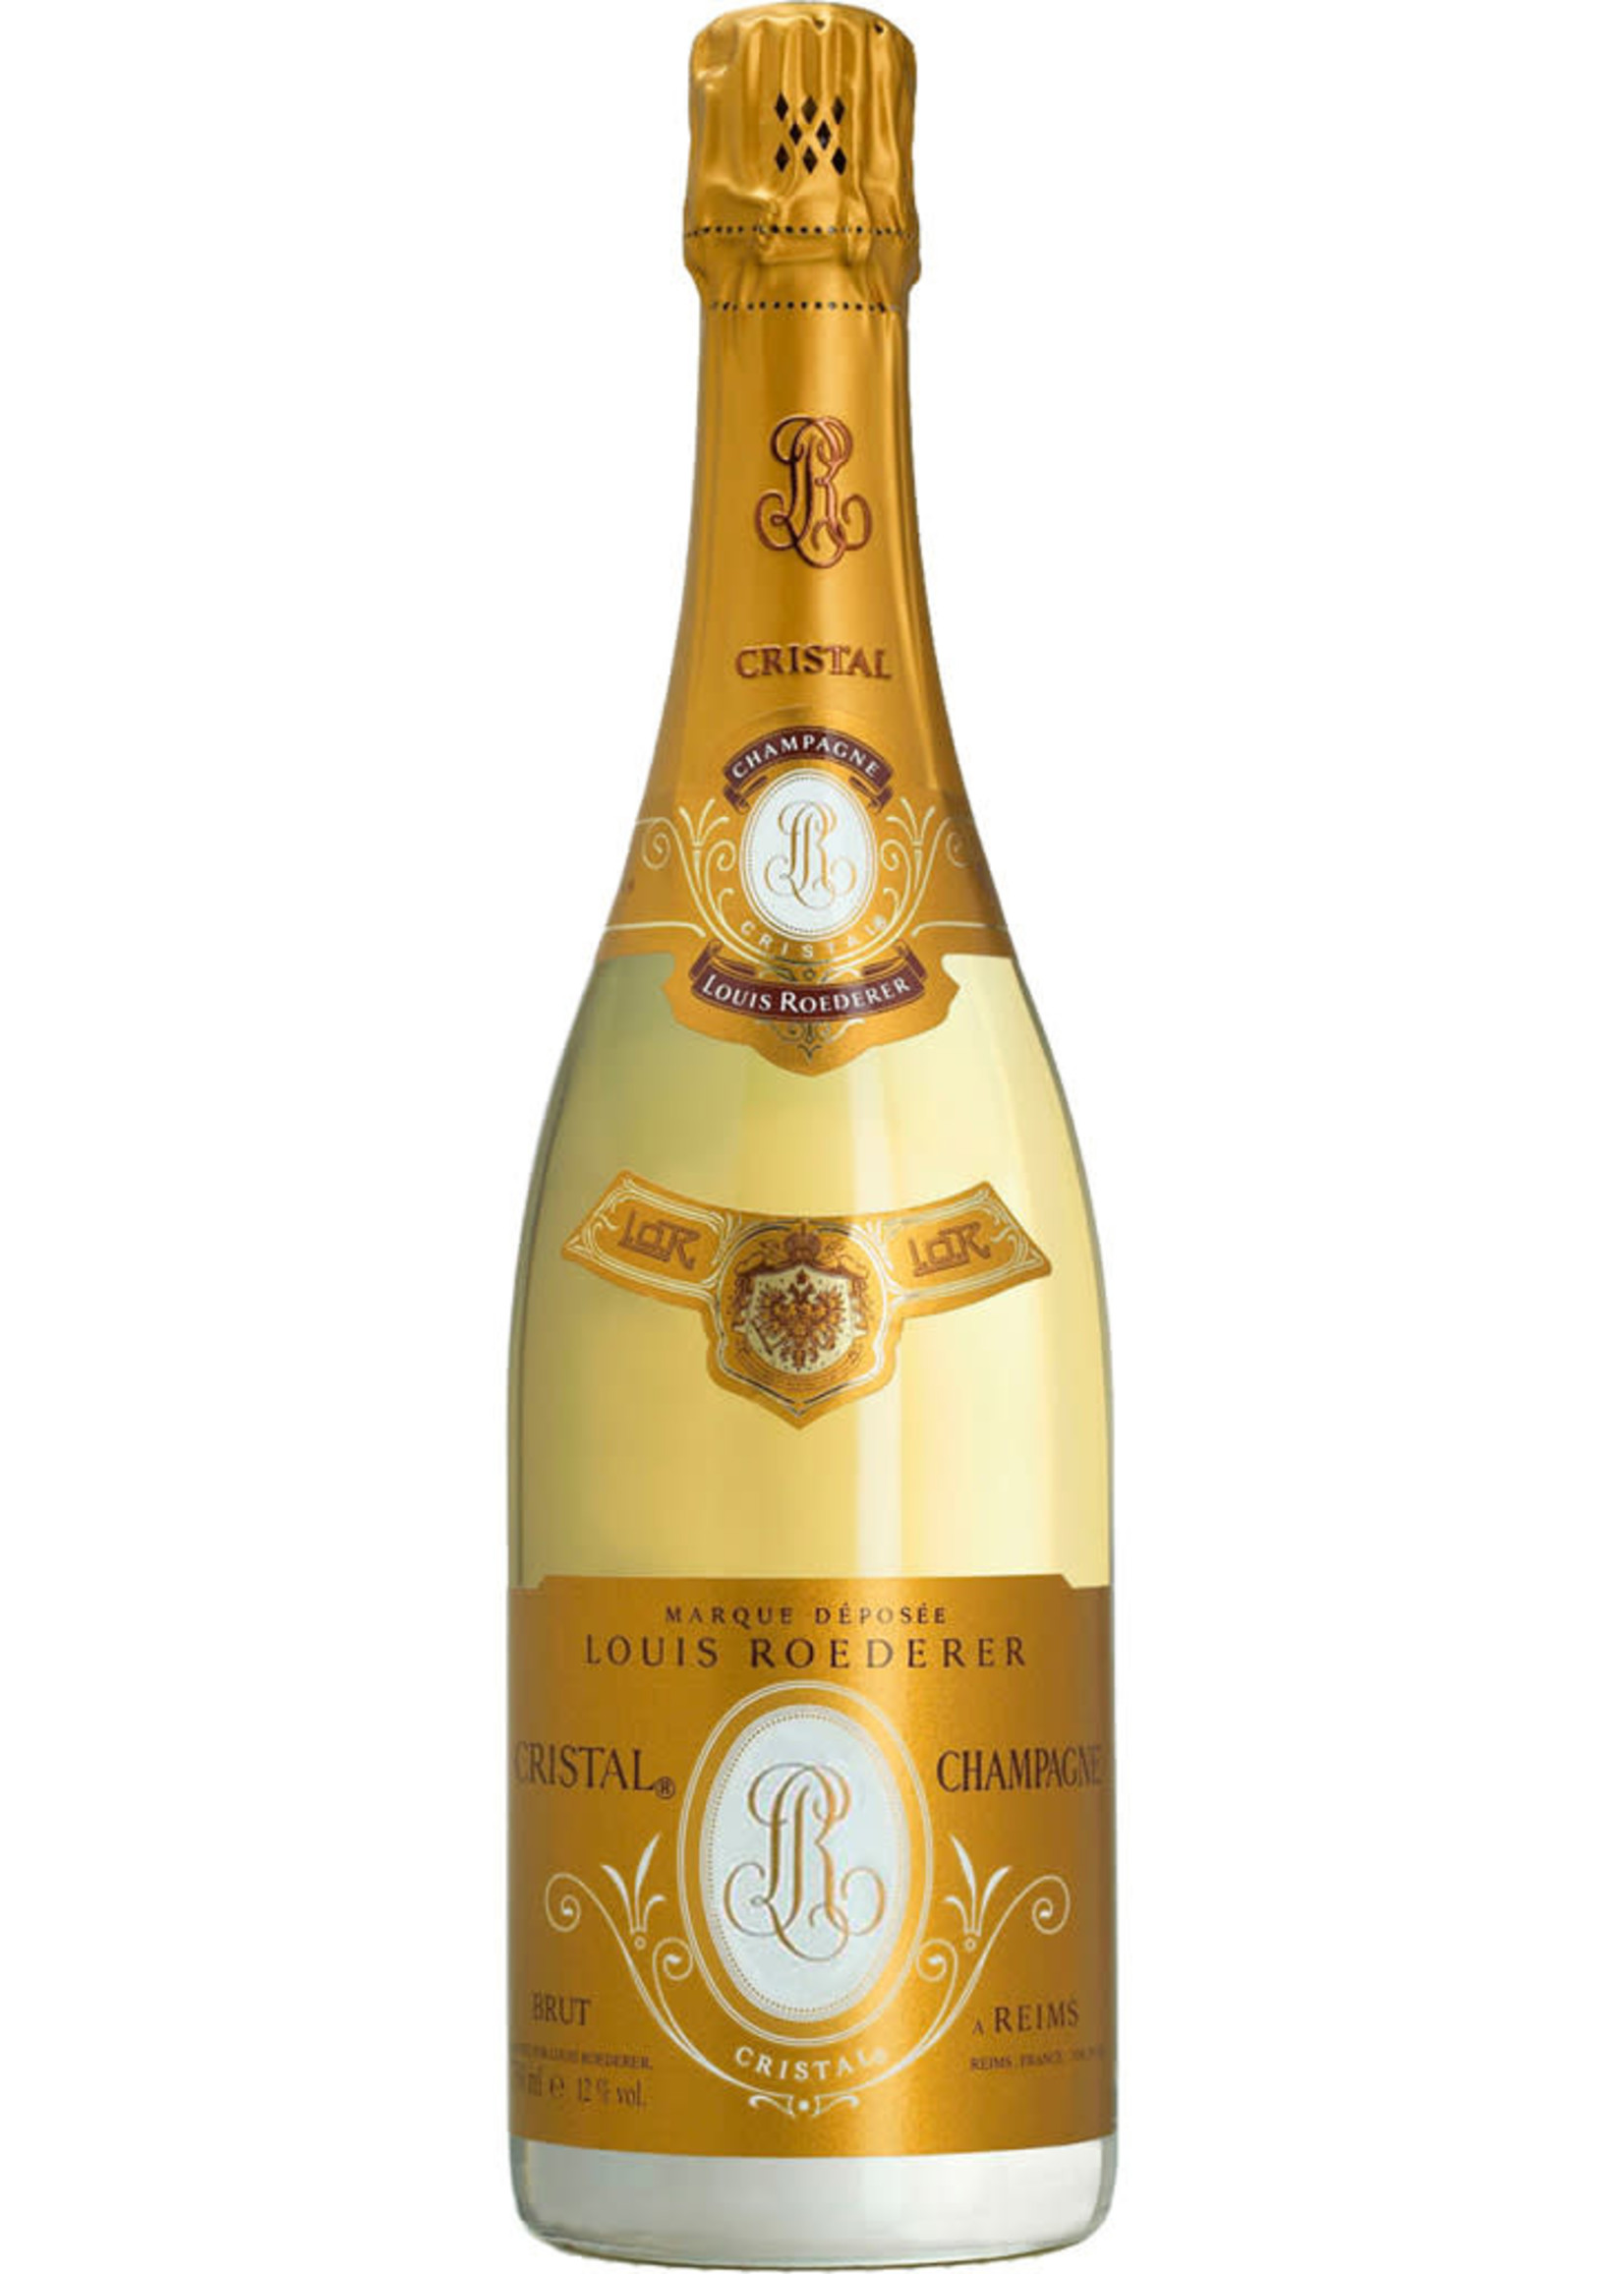 Louis Roederer Estate Cristal Champagne, France 1.5L (Magnum)